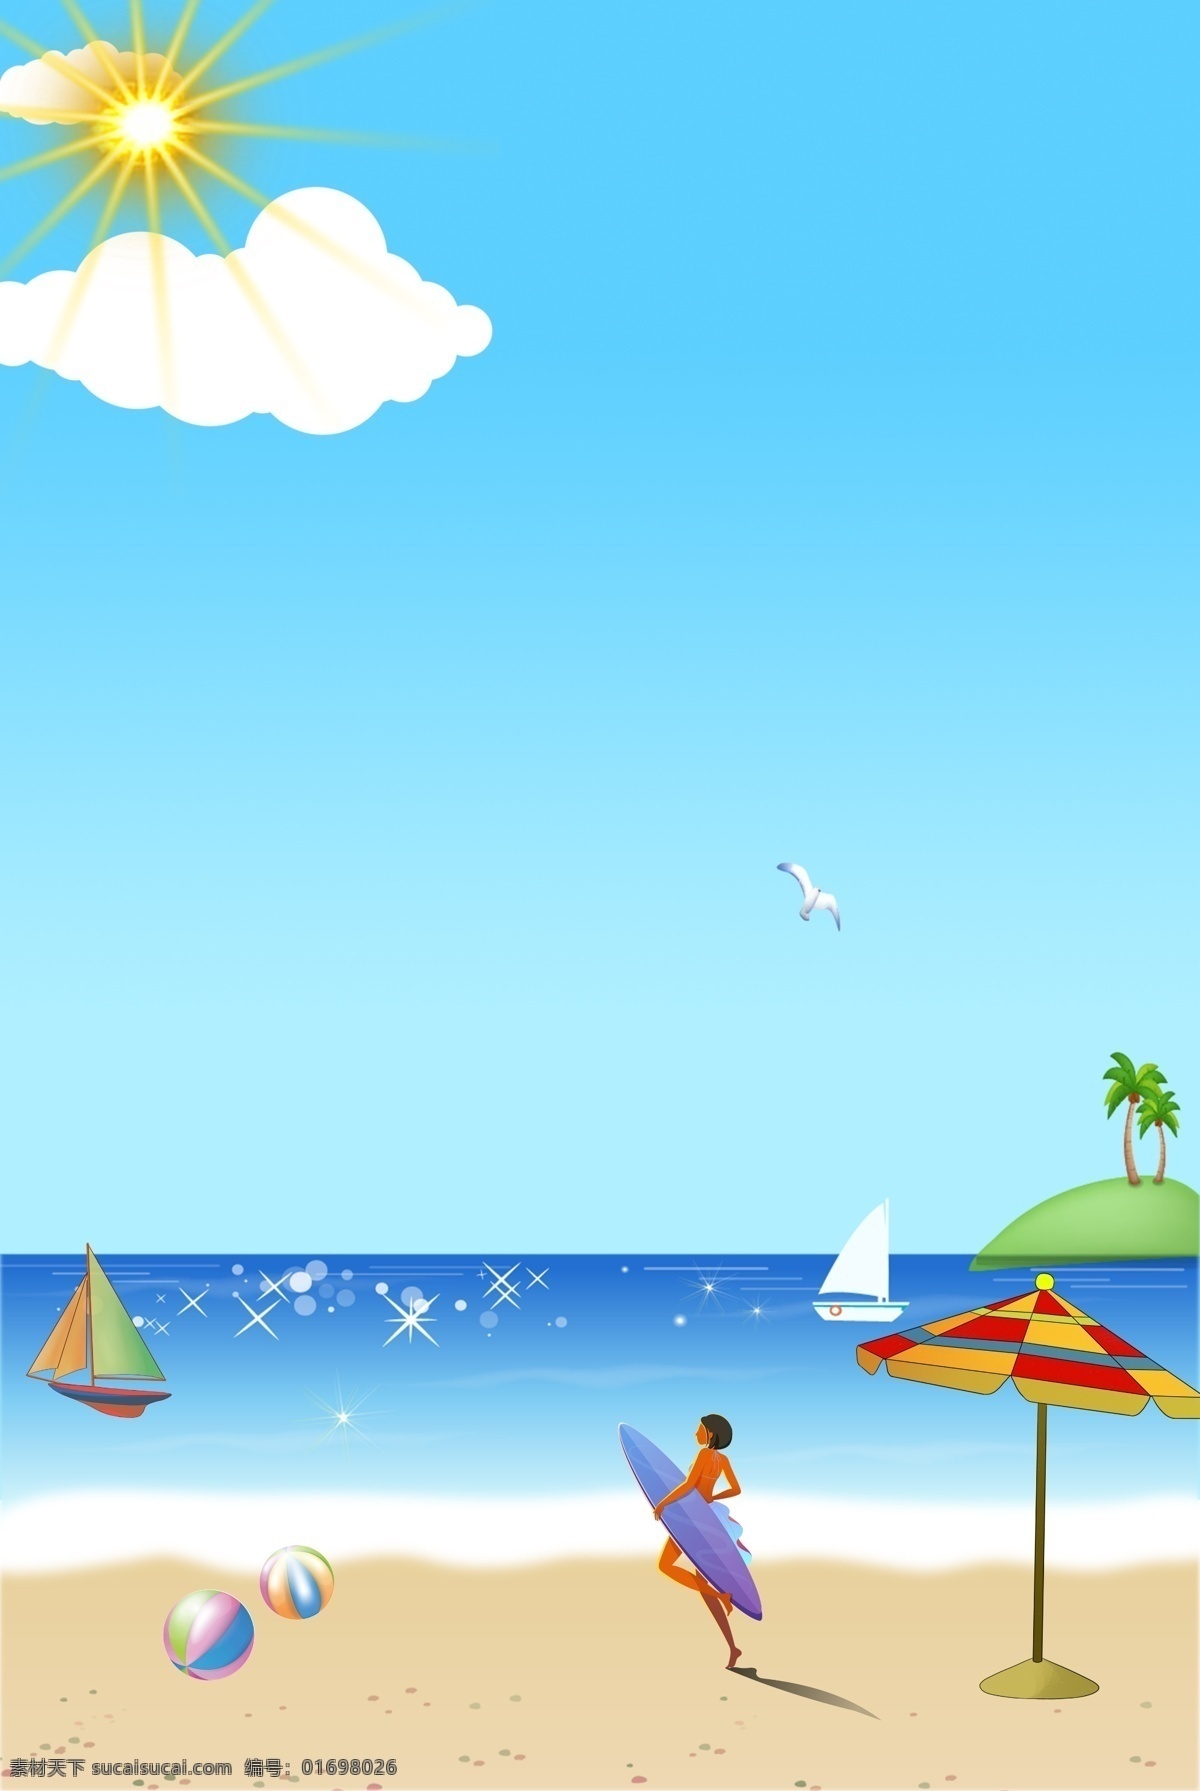 夏日 海滩 冲浪 少女 背景 太阳 船 人 伞 沙滩 云 蓝天 球 树 山坡